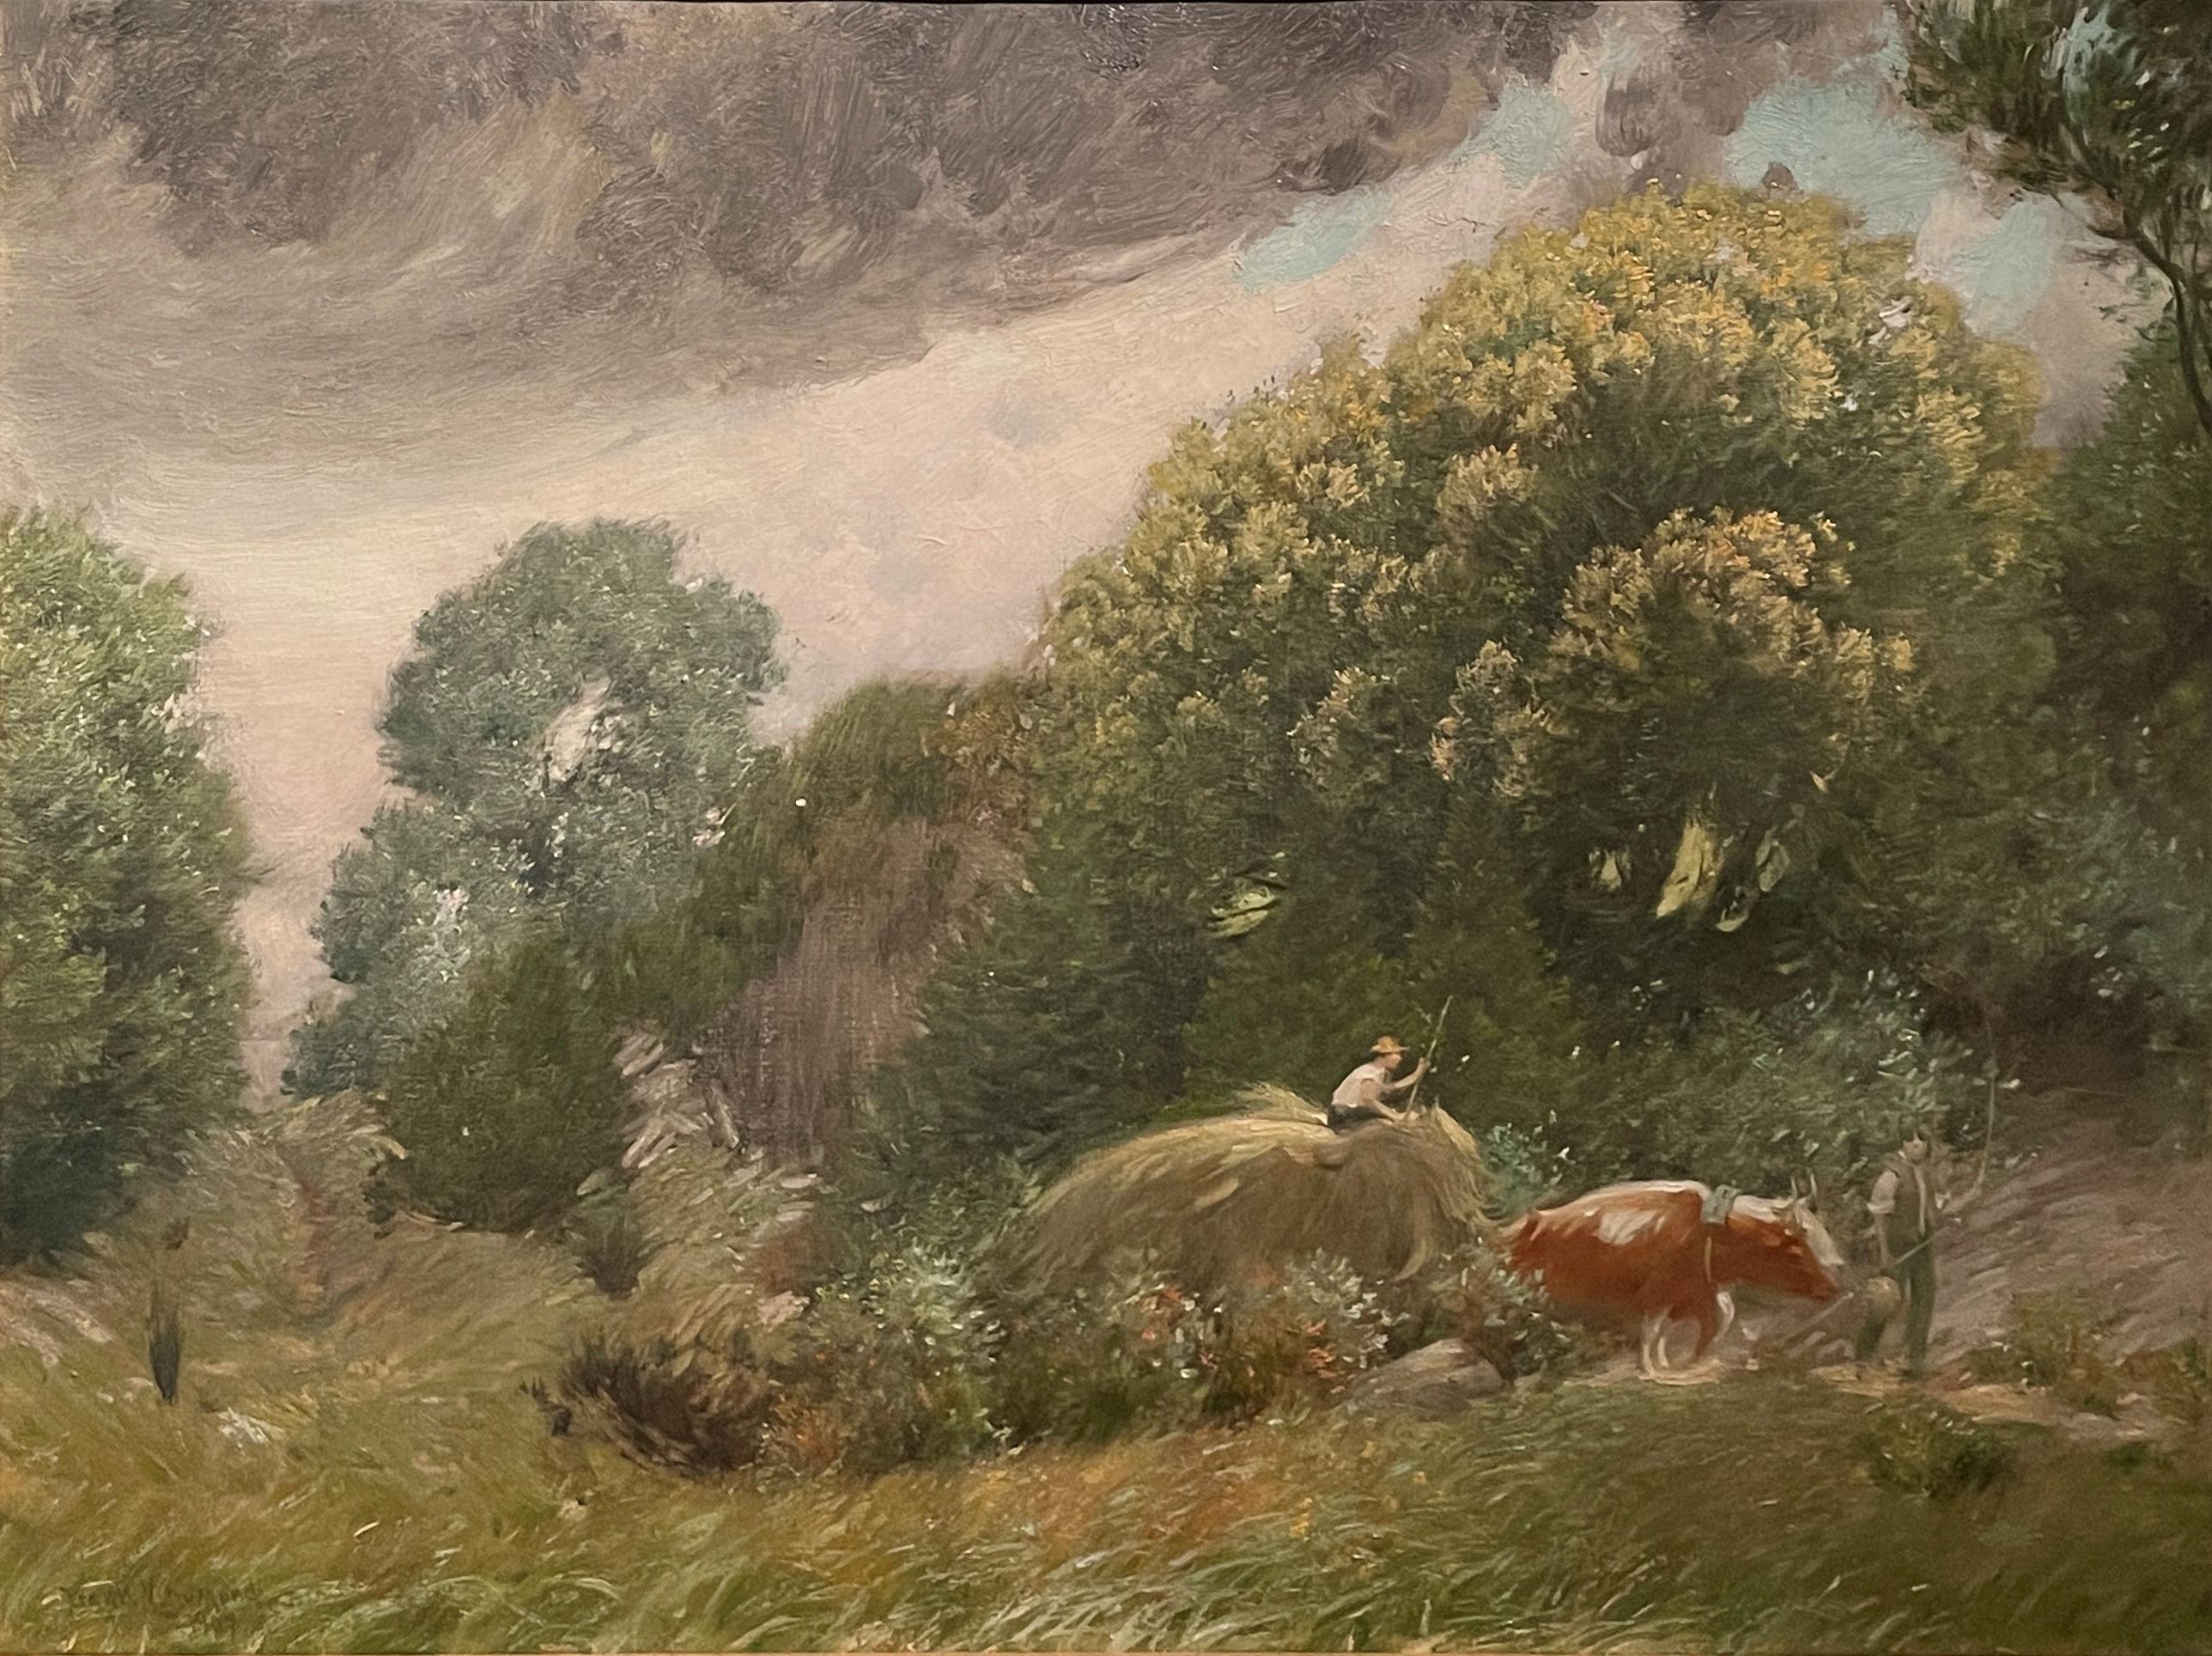 Frank Vincent Dumond Landscape Painting - "The South Wind, " Frank Dumond, Connecticut Impressionism, Old Lyme Landscape